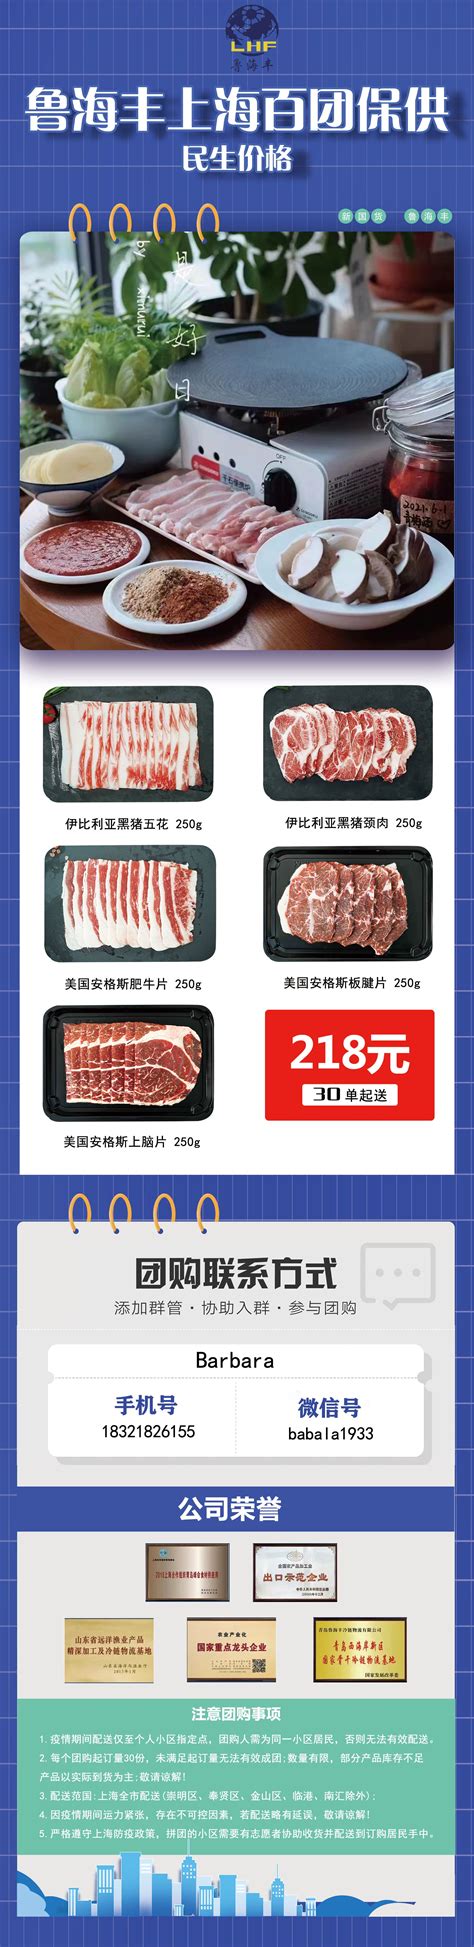 【国庆可用】198元抢万炉海鲜烤肉自助情侣双人套餐 - 家在深圳